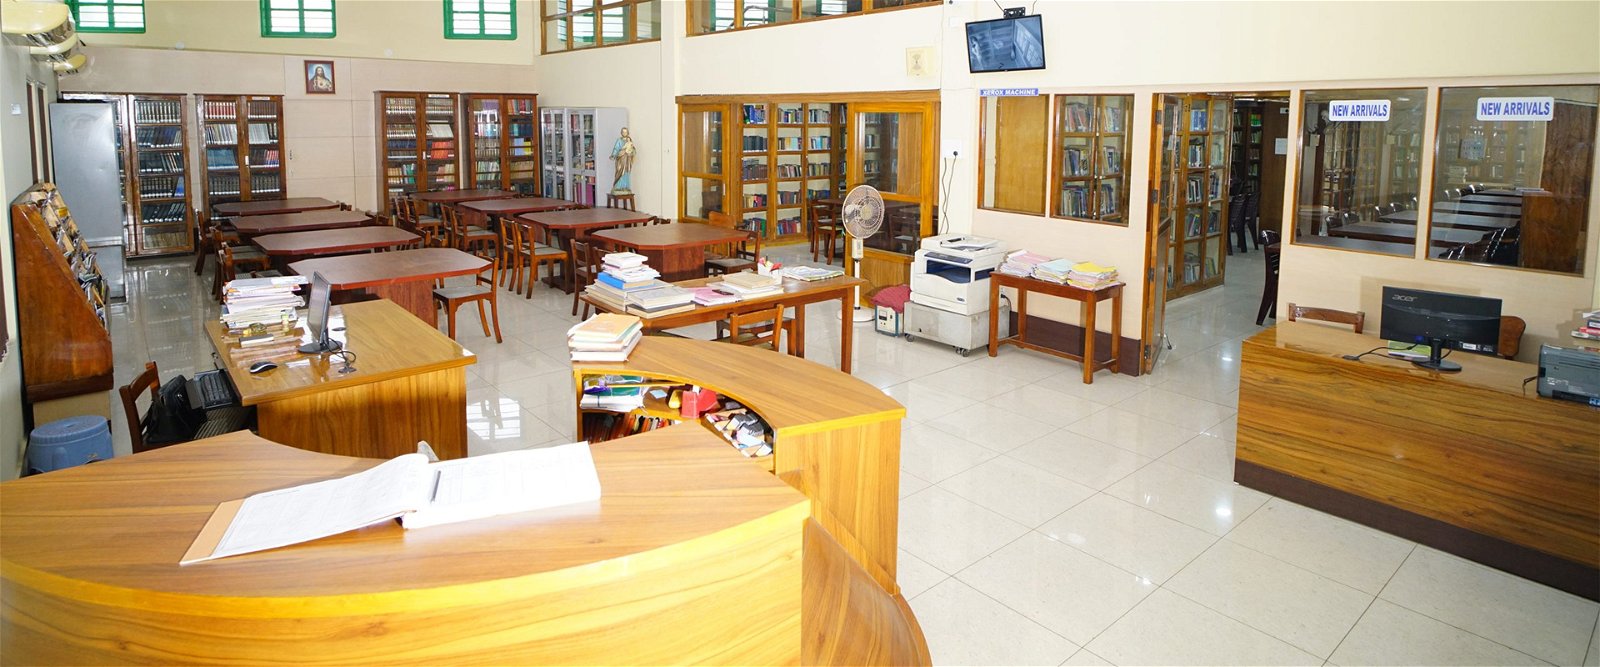 Library for St. Joseph's College For Women (SJCW, Visakhapatnam) in Visakhapatnam	